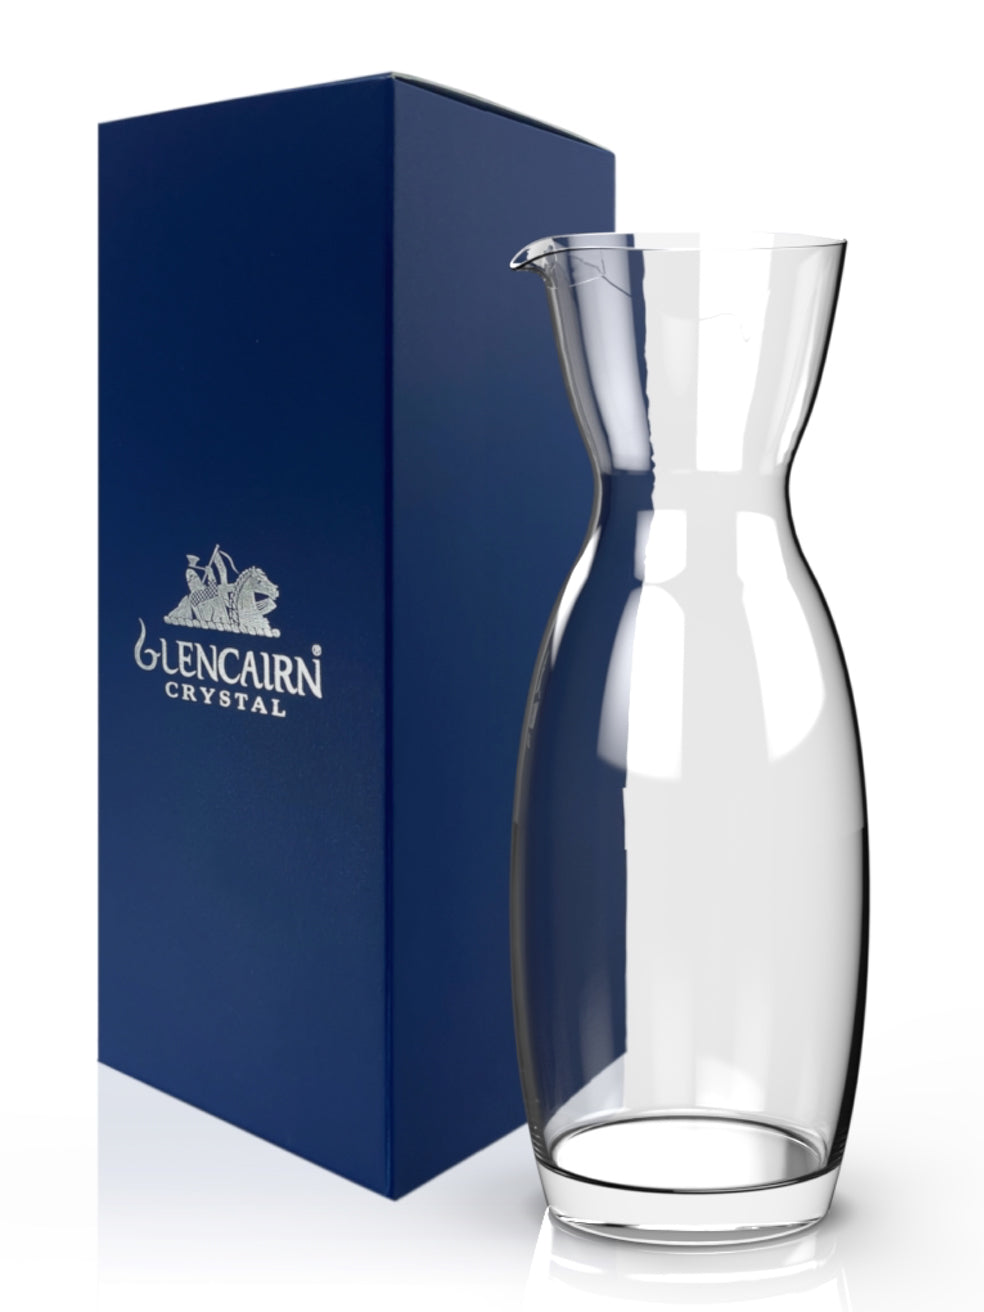 The 500ml lead free crystal water jug by Glengairn Crystal.